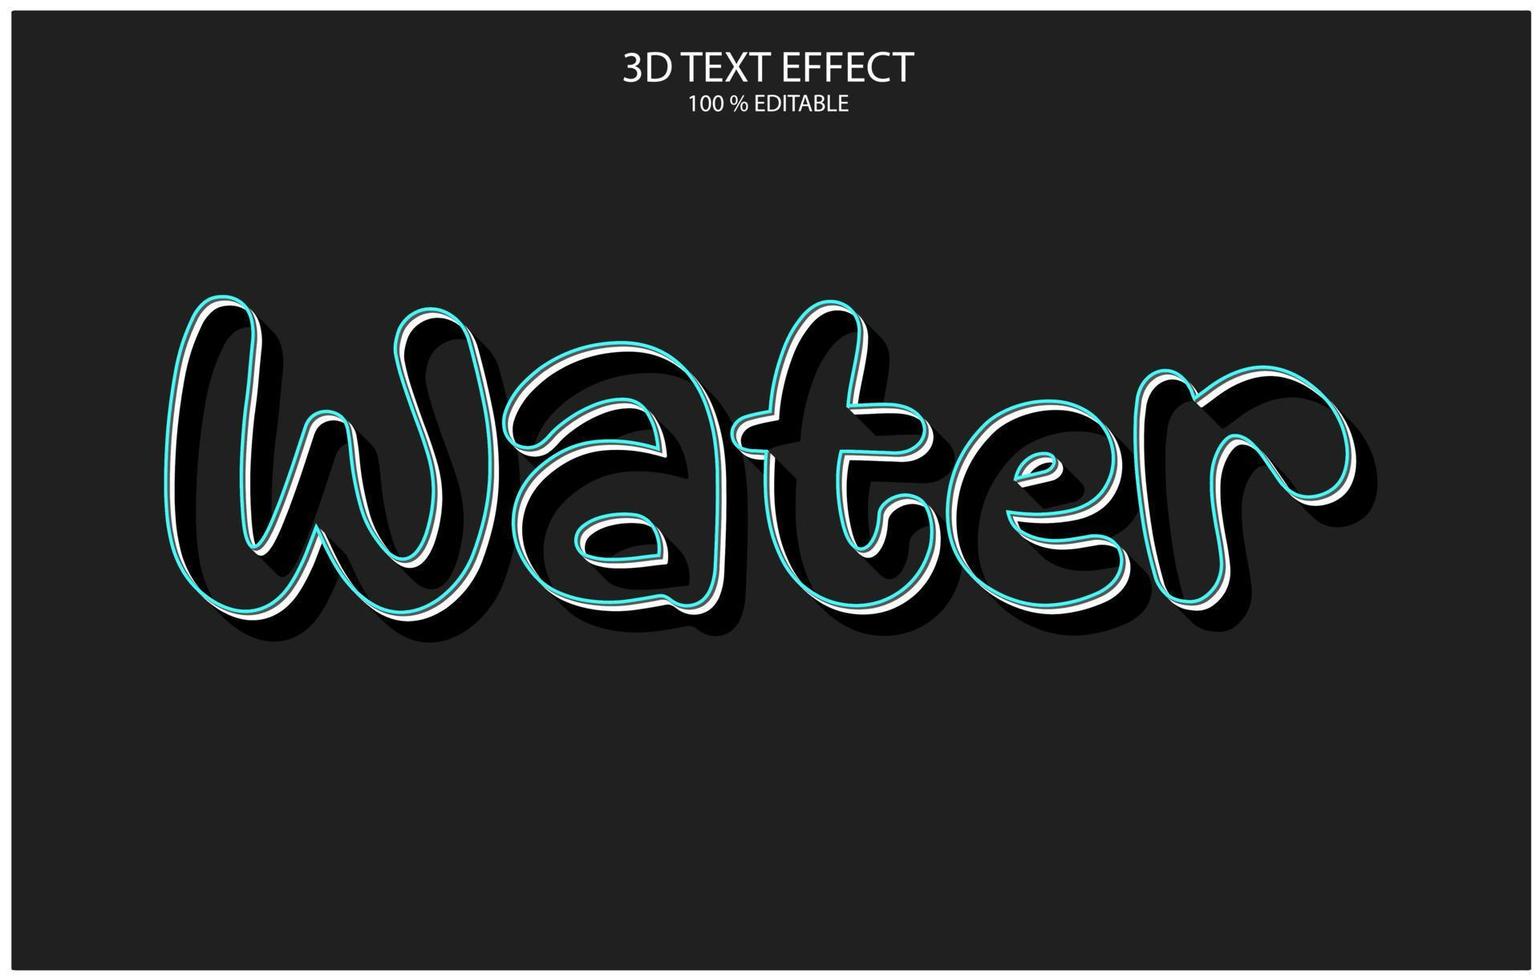 bearbeitbarer 3d-texteffekt, texteffektstil, wasserbearbeitbare texteffektvorlage vektor